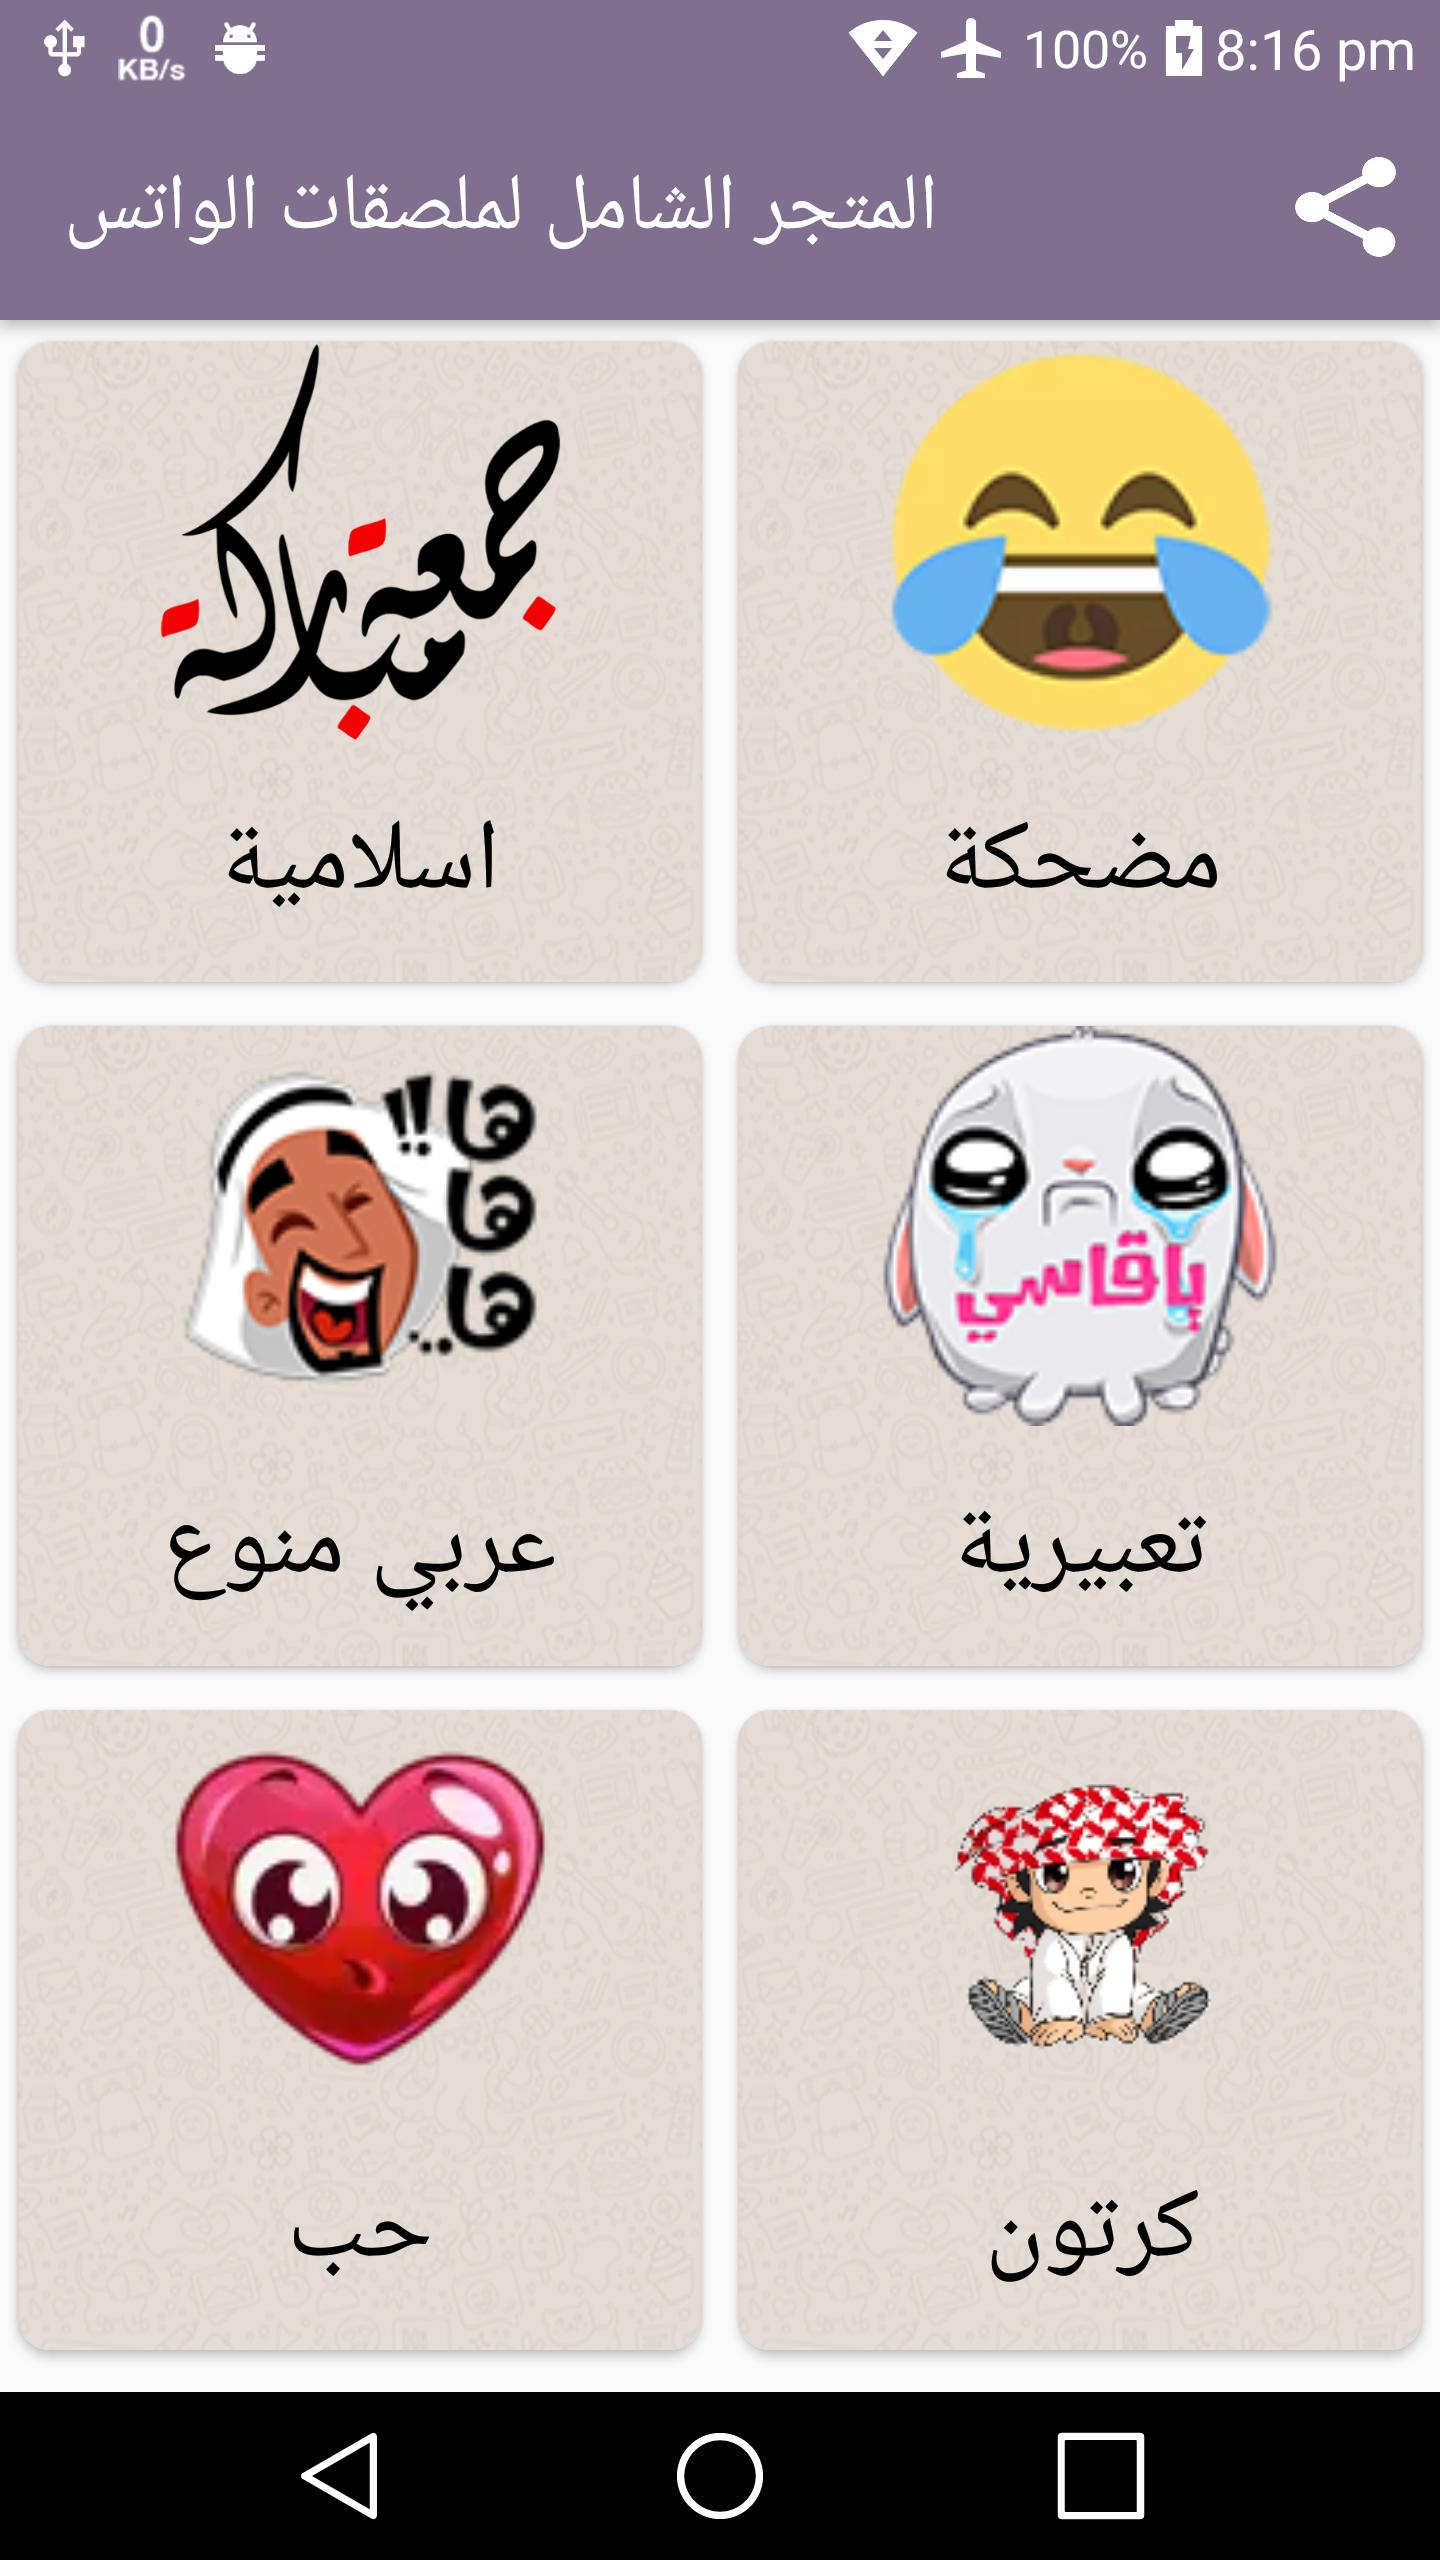 ملصقات الواتس - ملصقات واتساب عربية ١٩٦٦ — أفضل 8 مواقع لإنشاء بطاقة فيزا  افتراضية